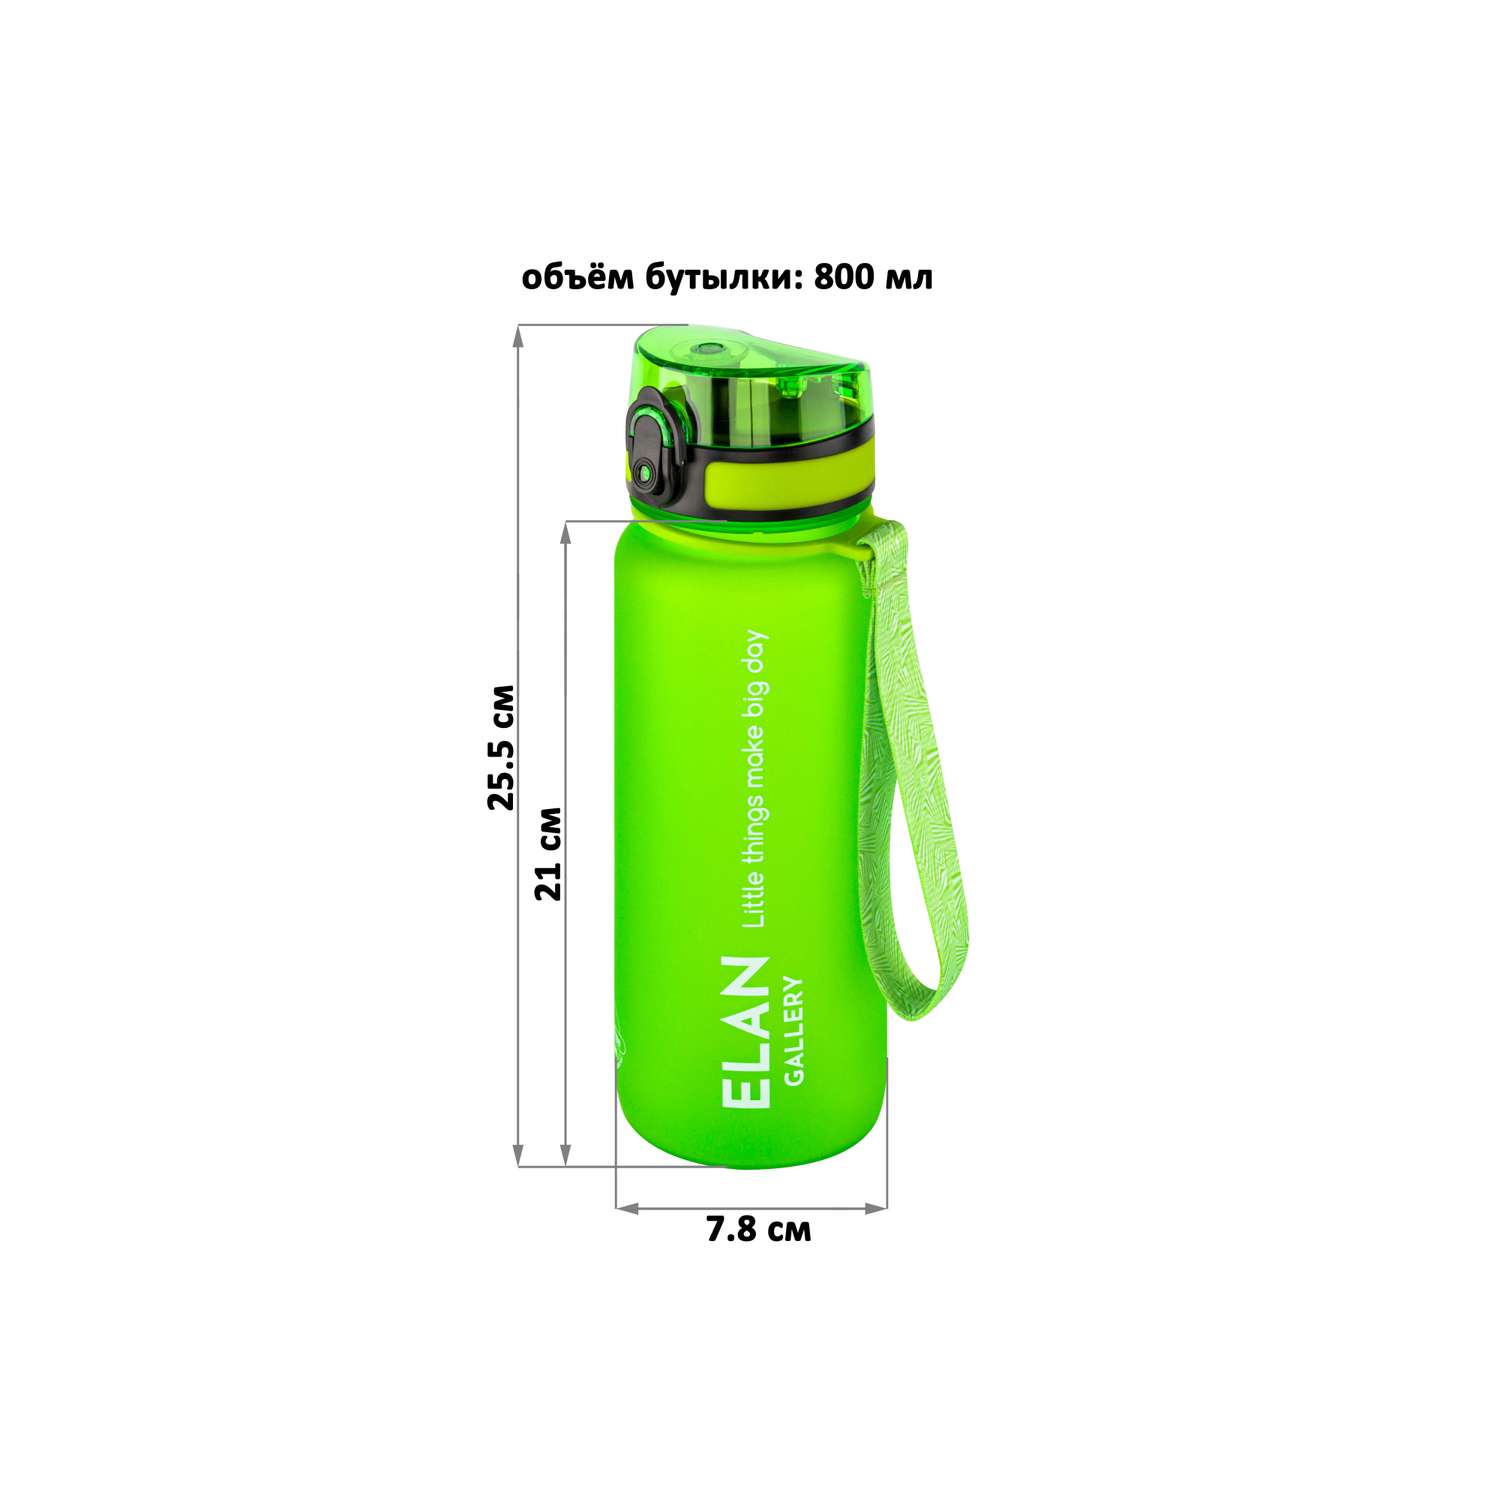 Бутылка для воды Elan Gallery 800 мл Style Matte ярко-зеленая - фото 2